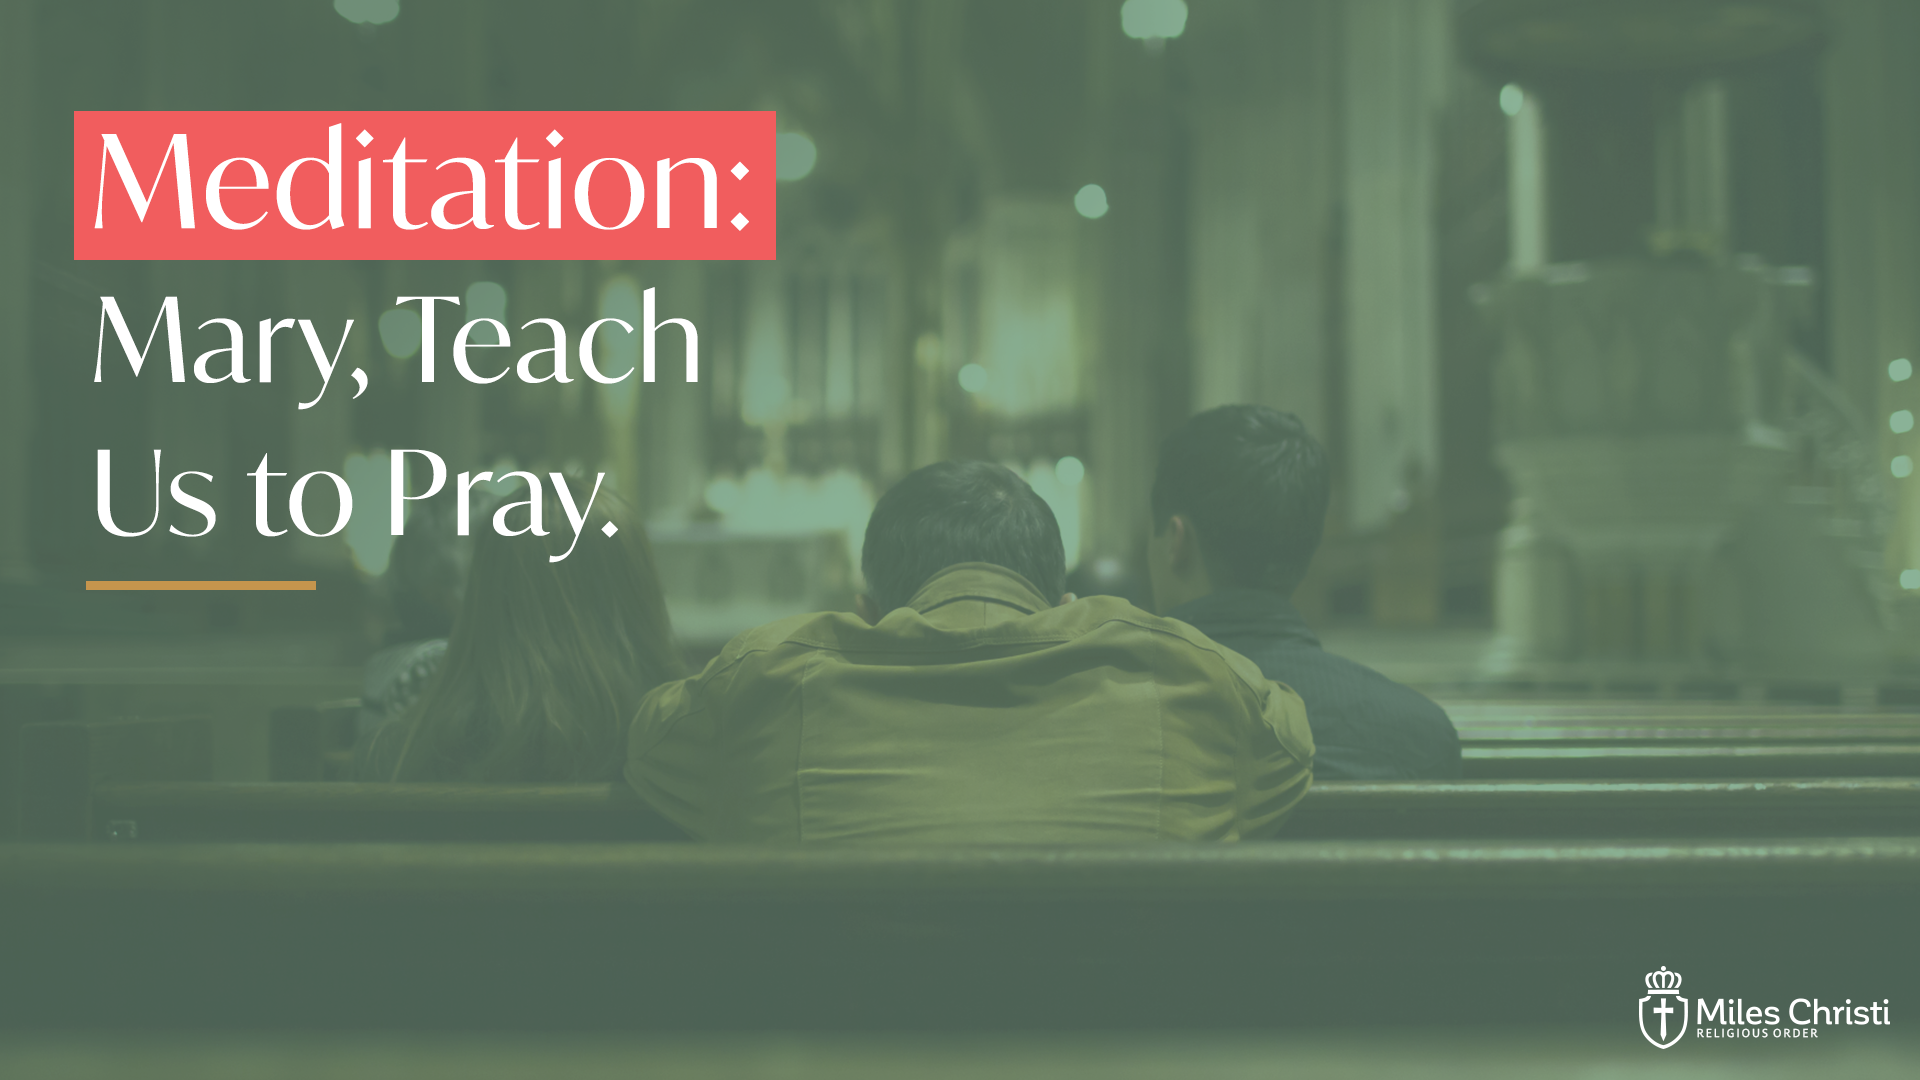 Mary, Teach Us to Pray